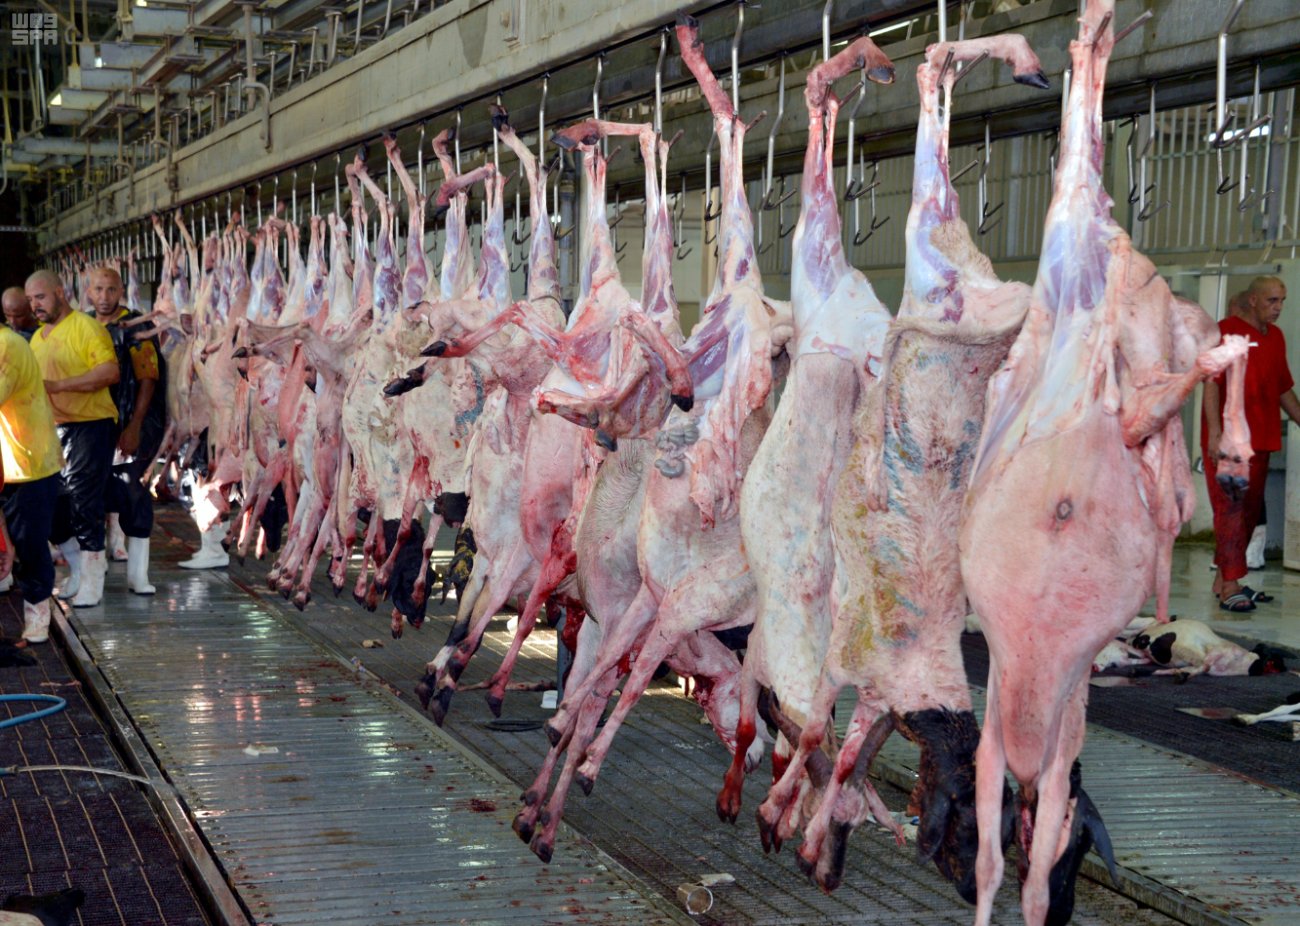 أمانة نجران تتلف 390 كيلو من اللحوم الفاسدة